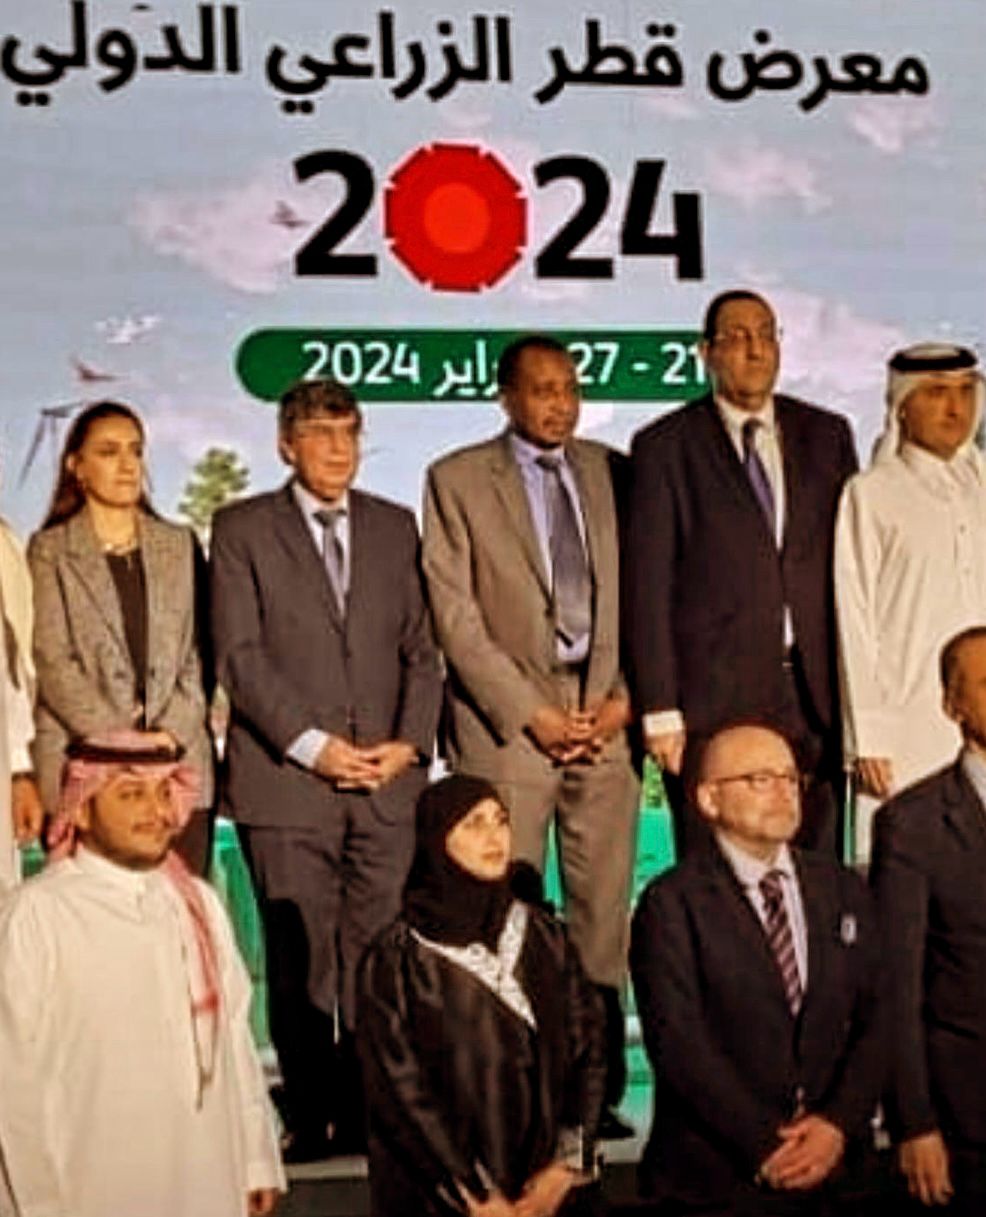 المدير العام للمنظمة العربية للتنمية الزراعية يشارك في ورشة عمل حول دور استخدامات تطبيقات الذكاء الاصطناعي في أساليب الزراعة الحديثة وتنميتها